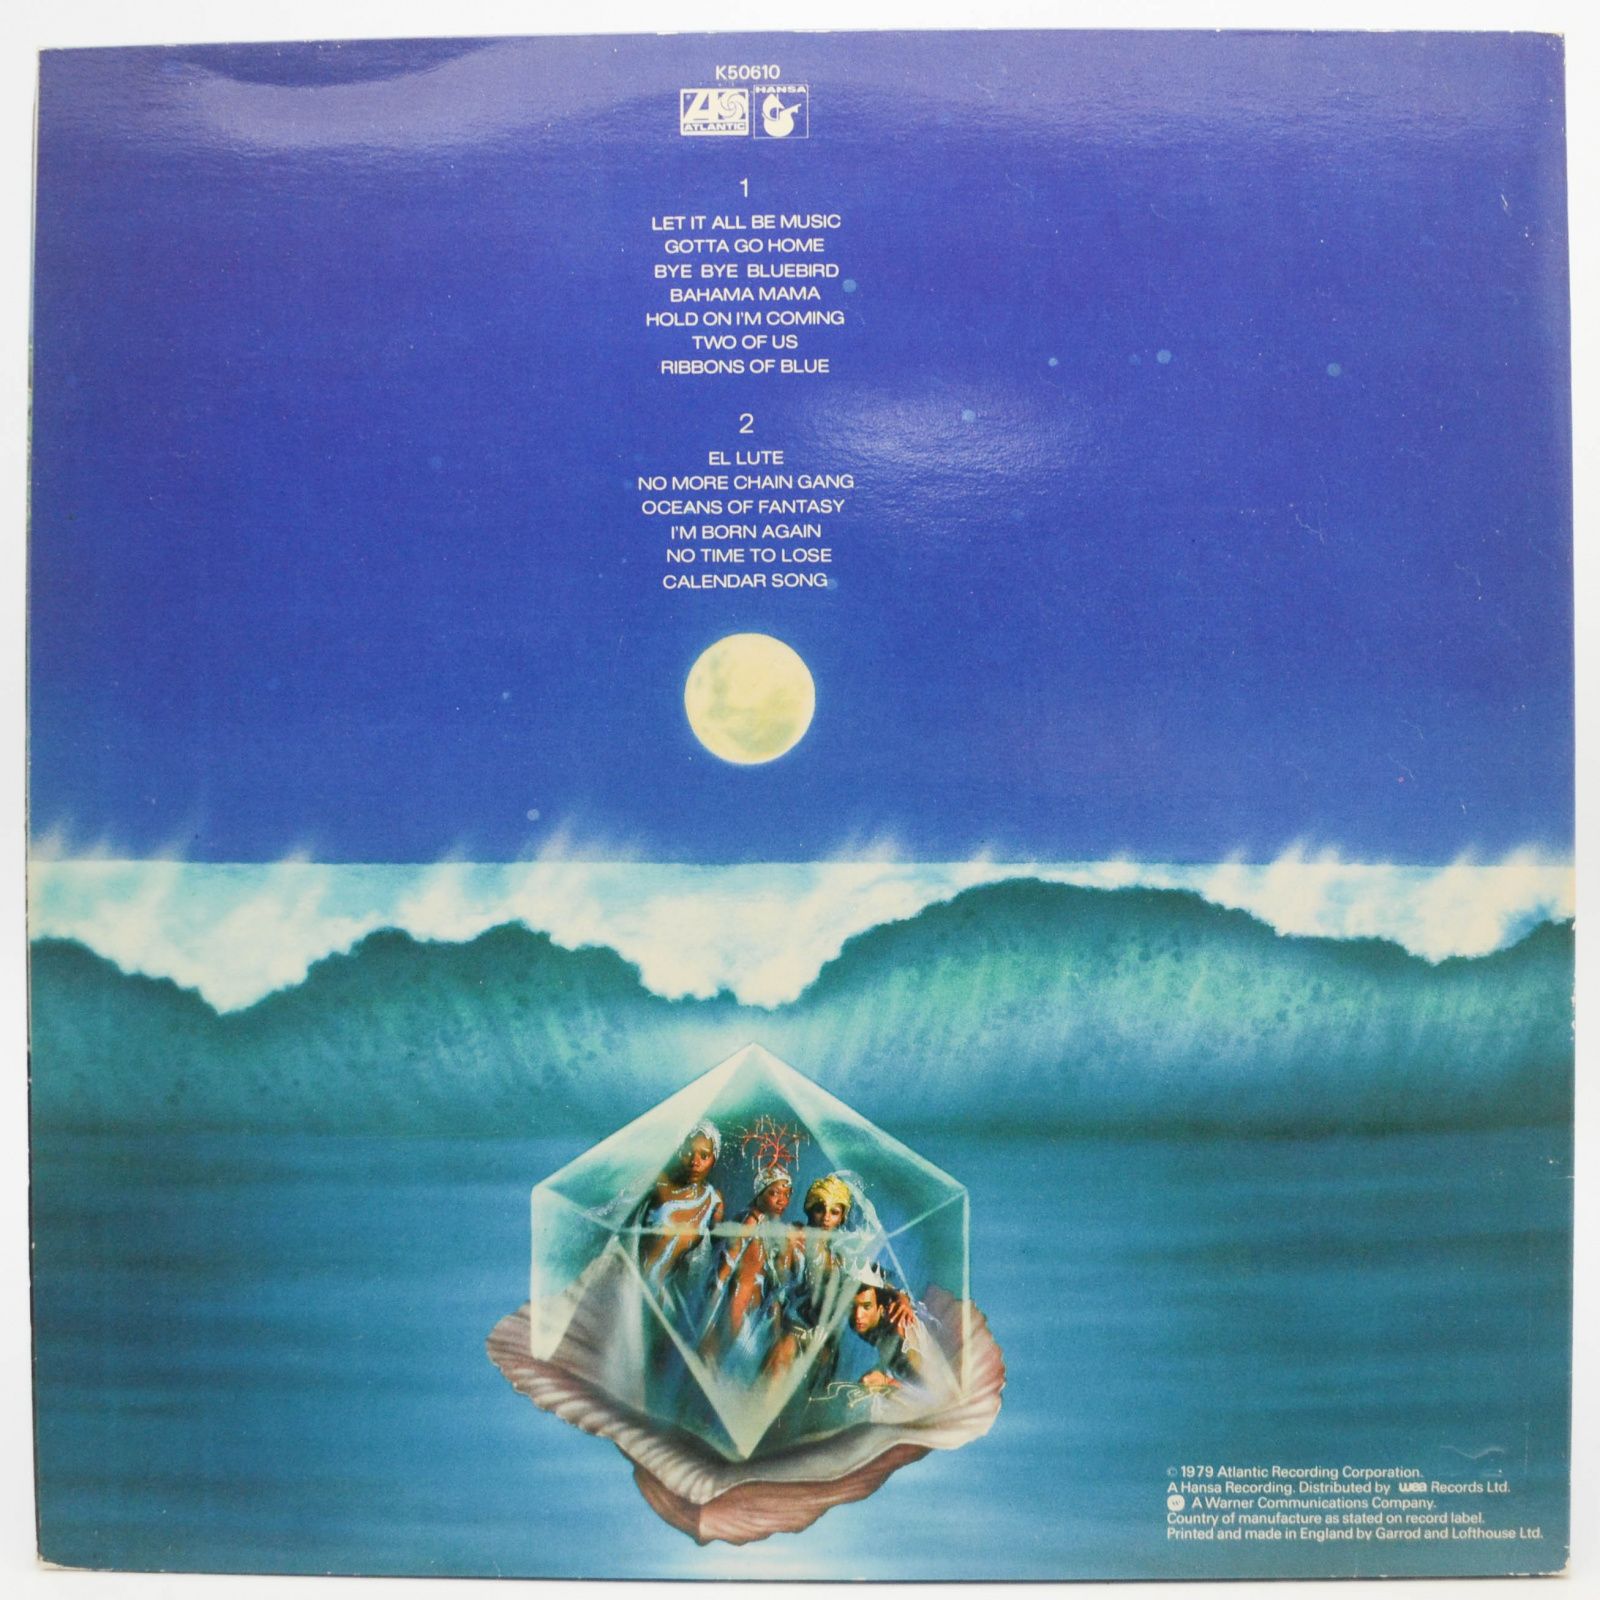 Boney M. — Oceans Of Fantasy (UK), 1979